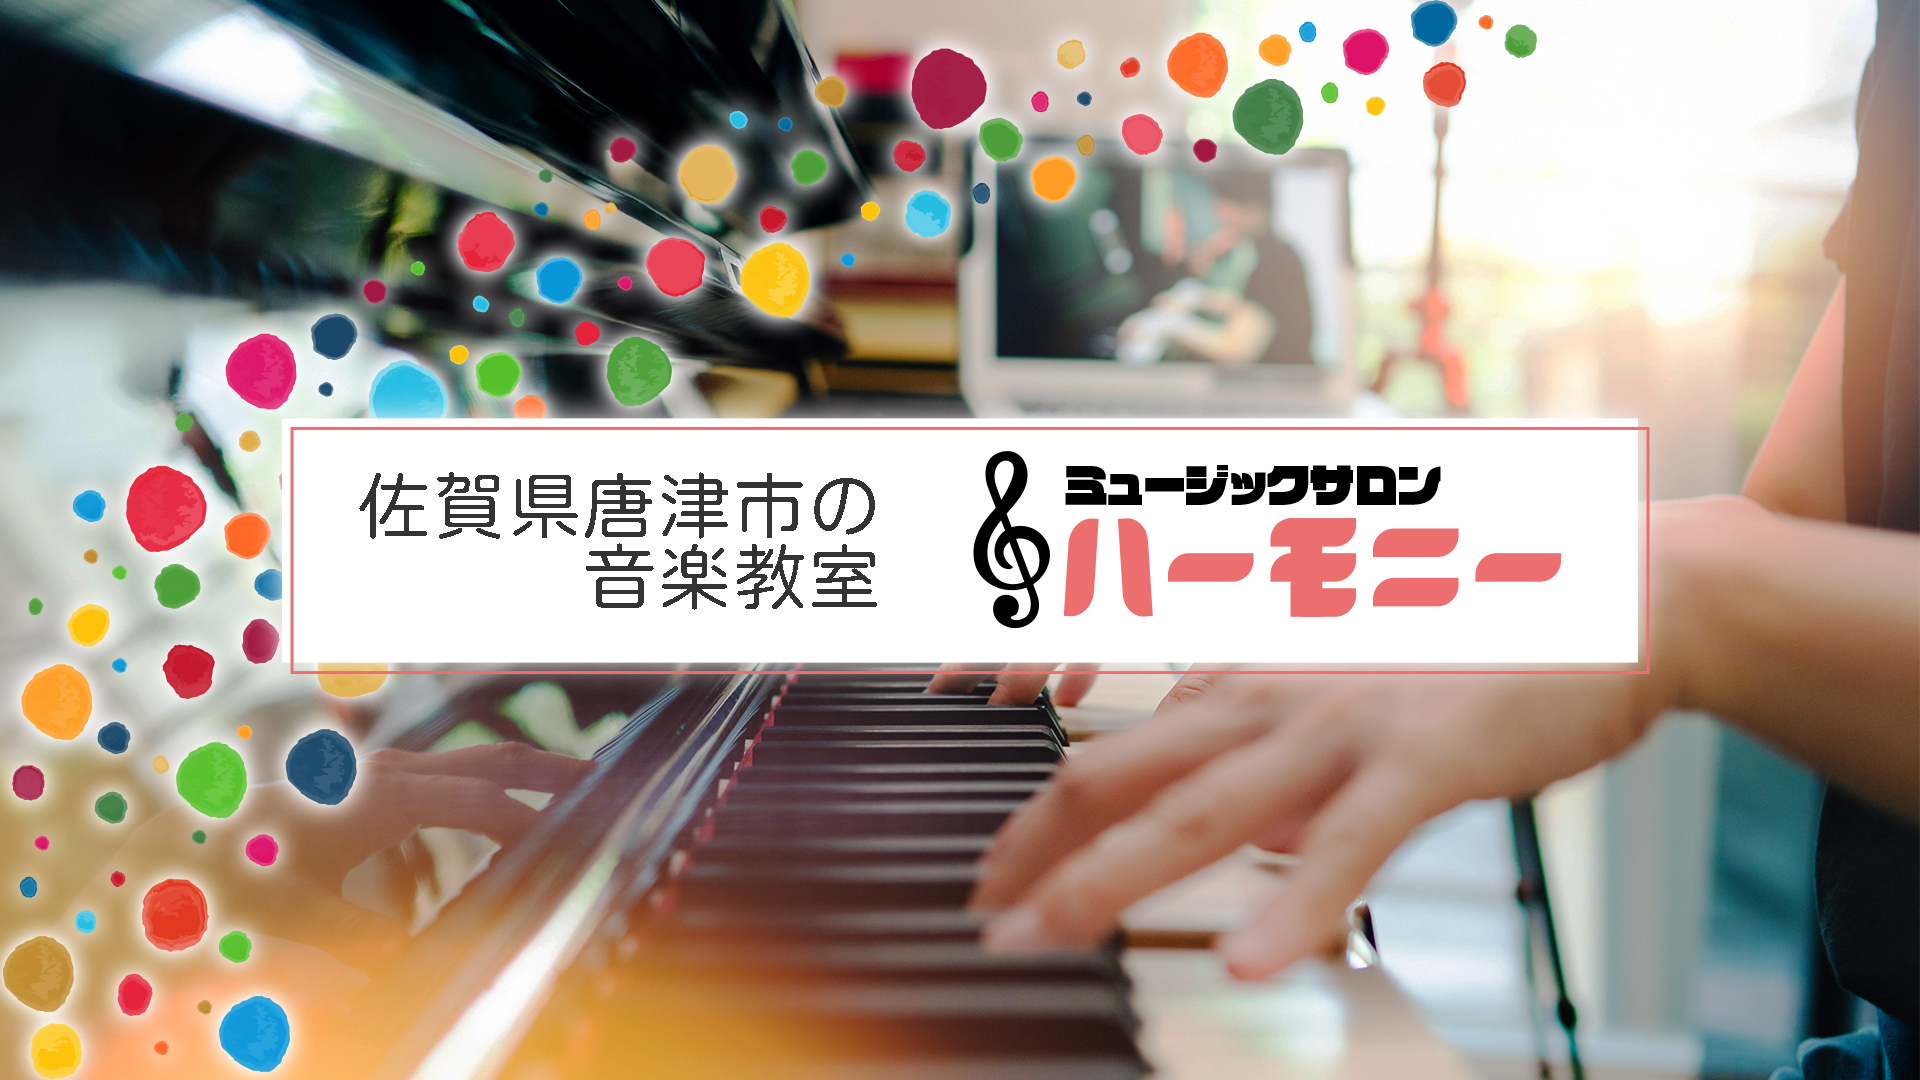 佐賀県唐津市の音楽教室ミュージックサロンハーモニーのバナー画像